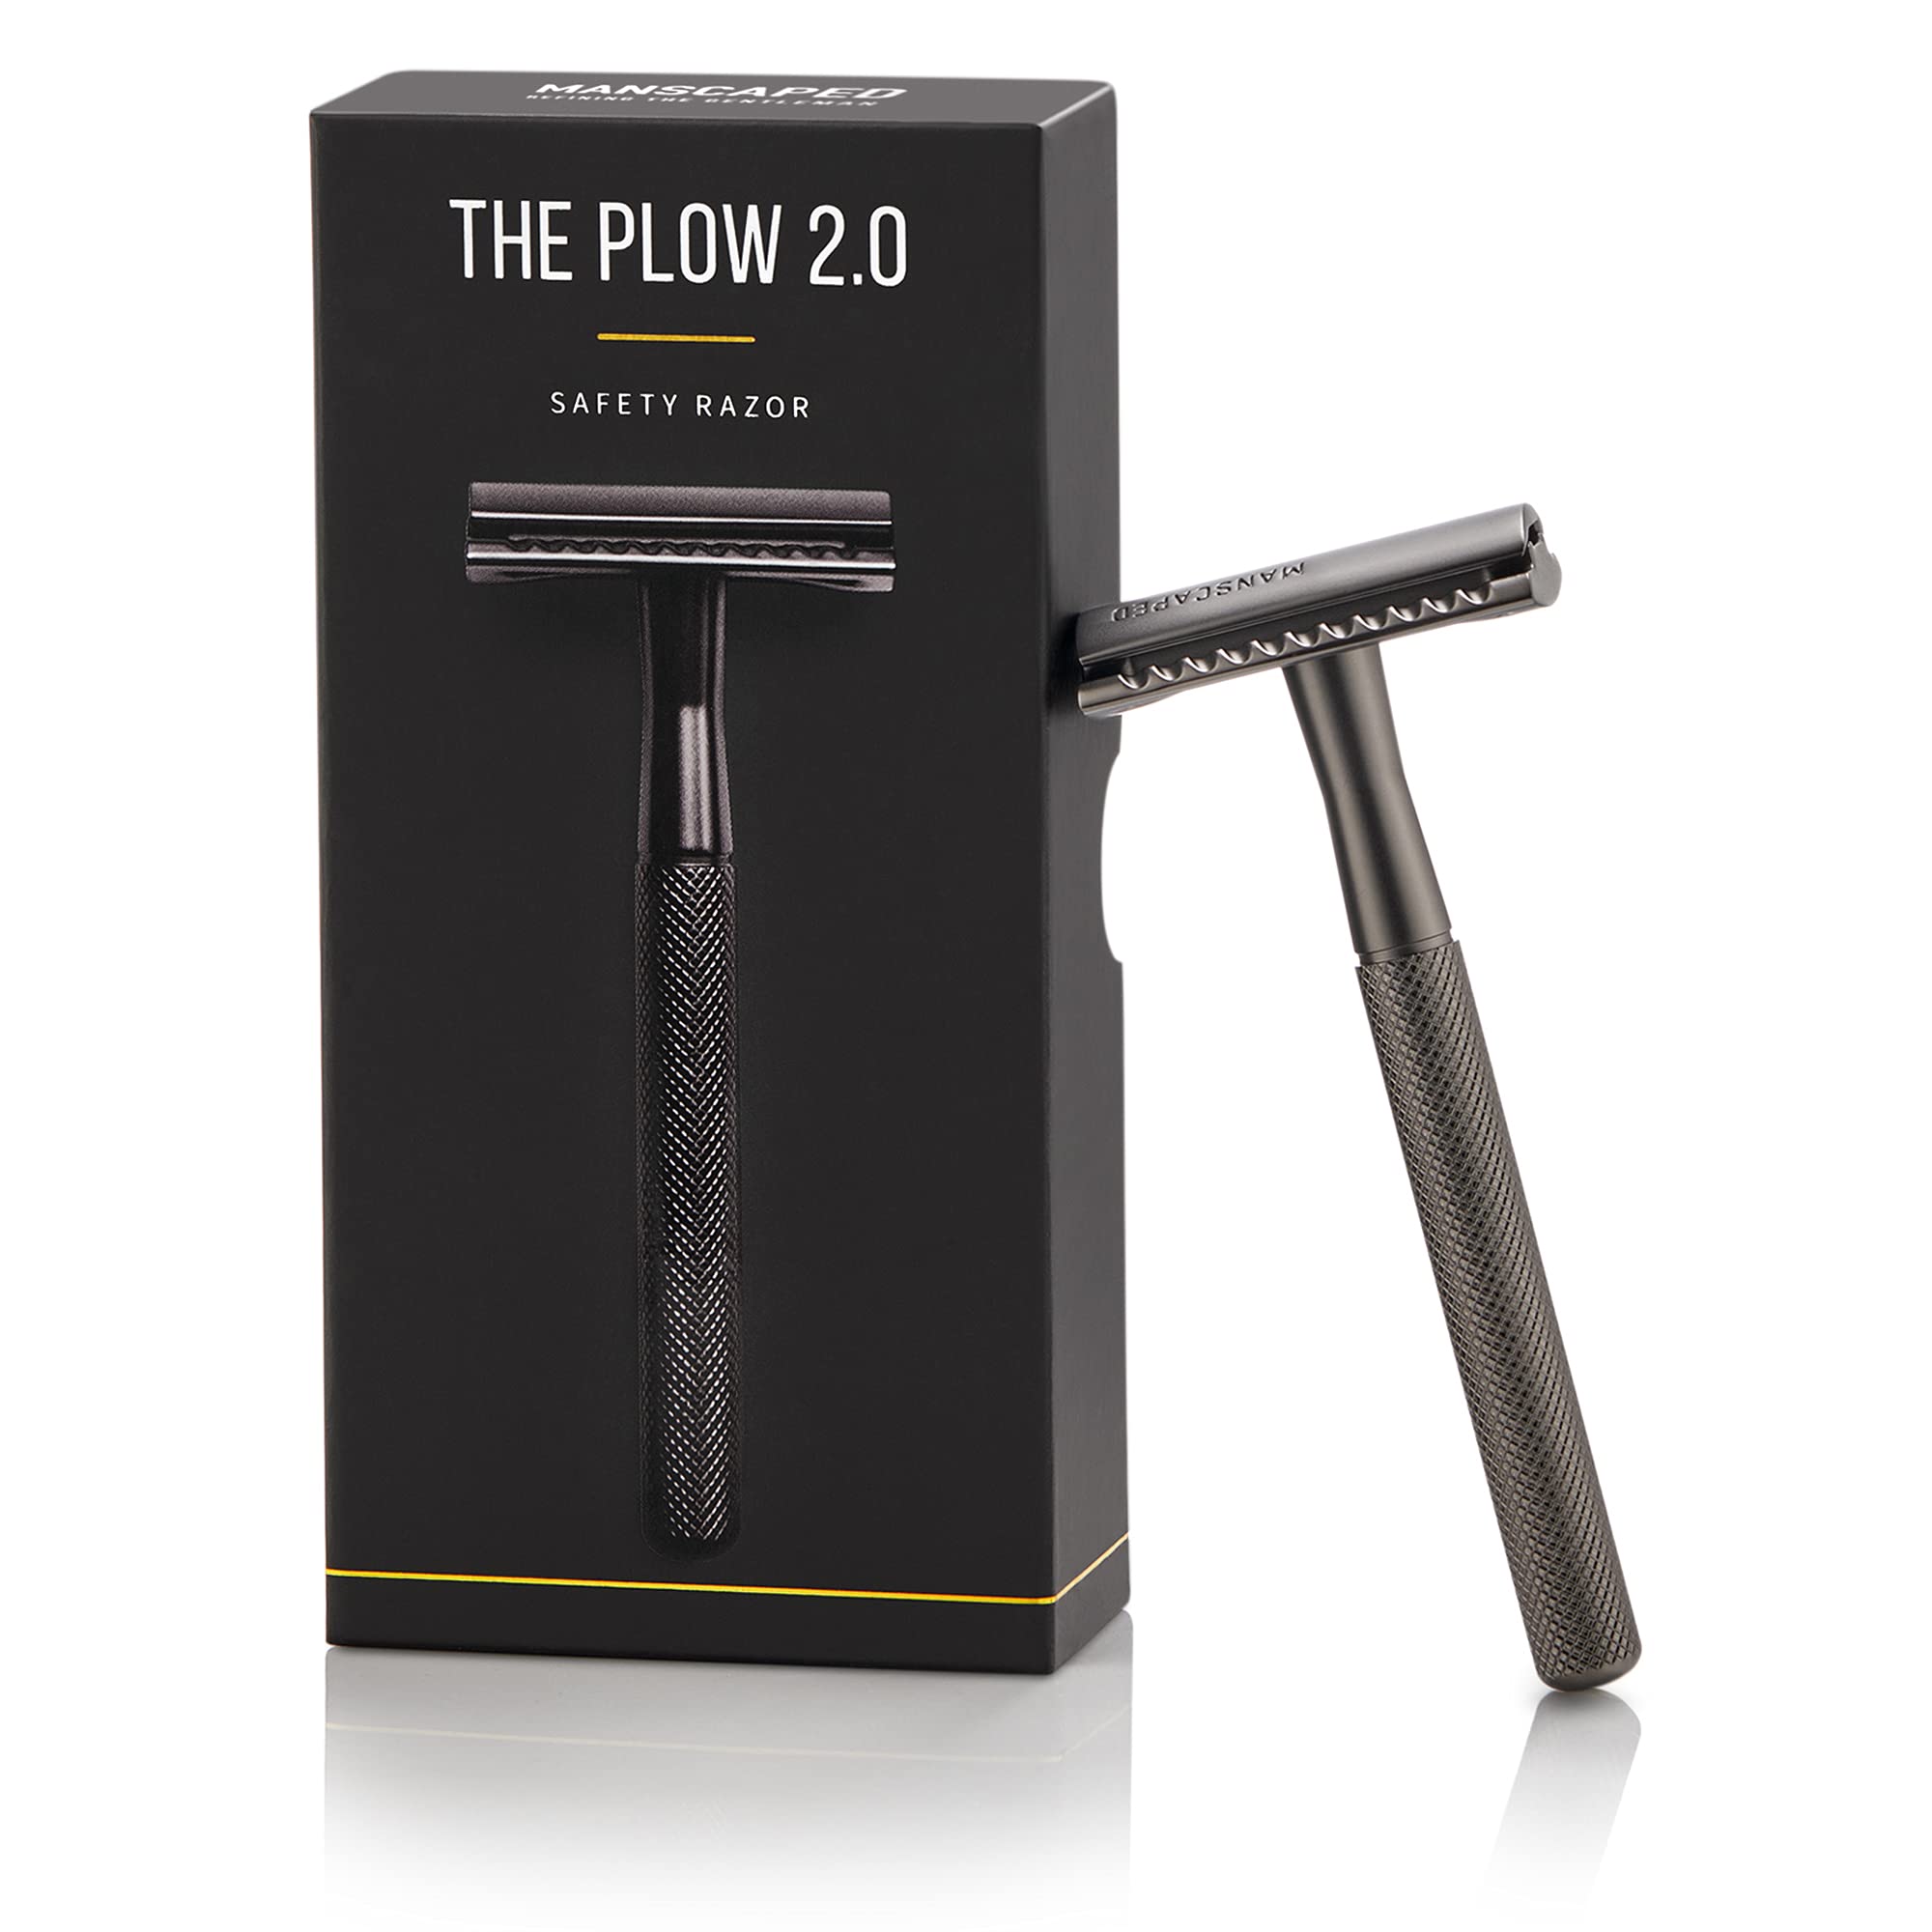 The Plow 2.0 Razor